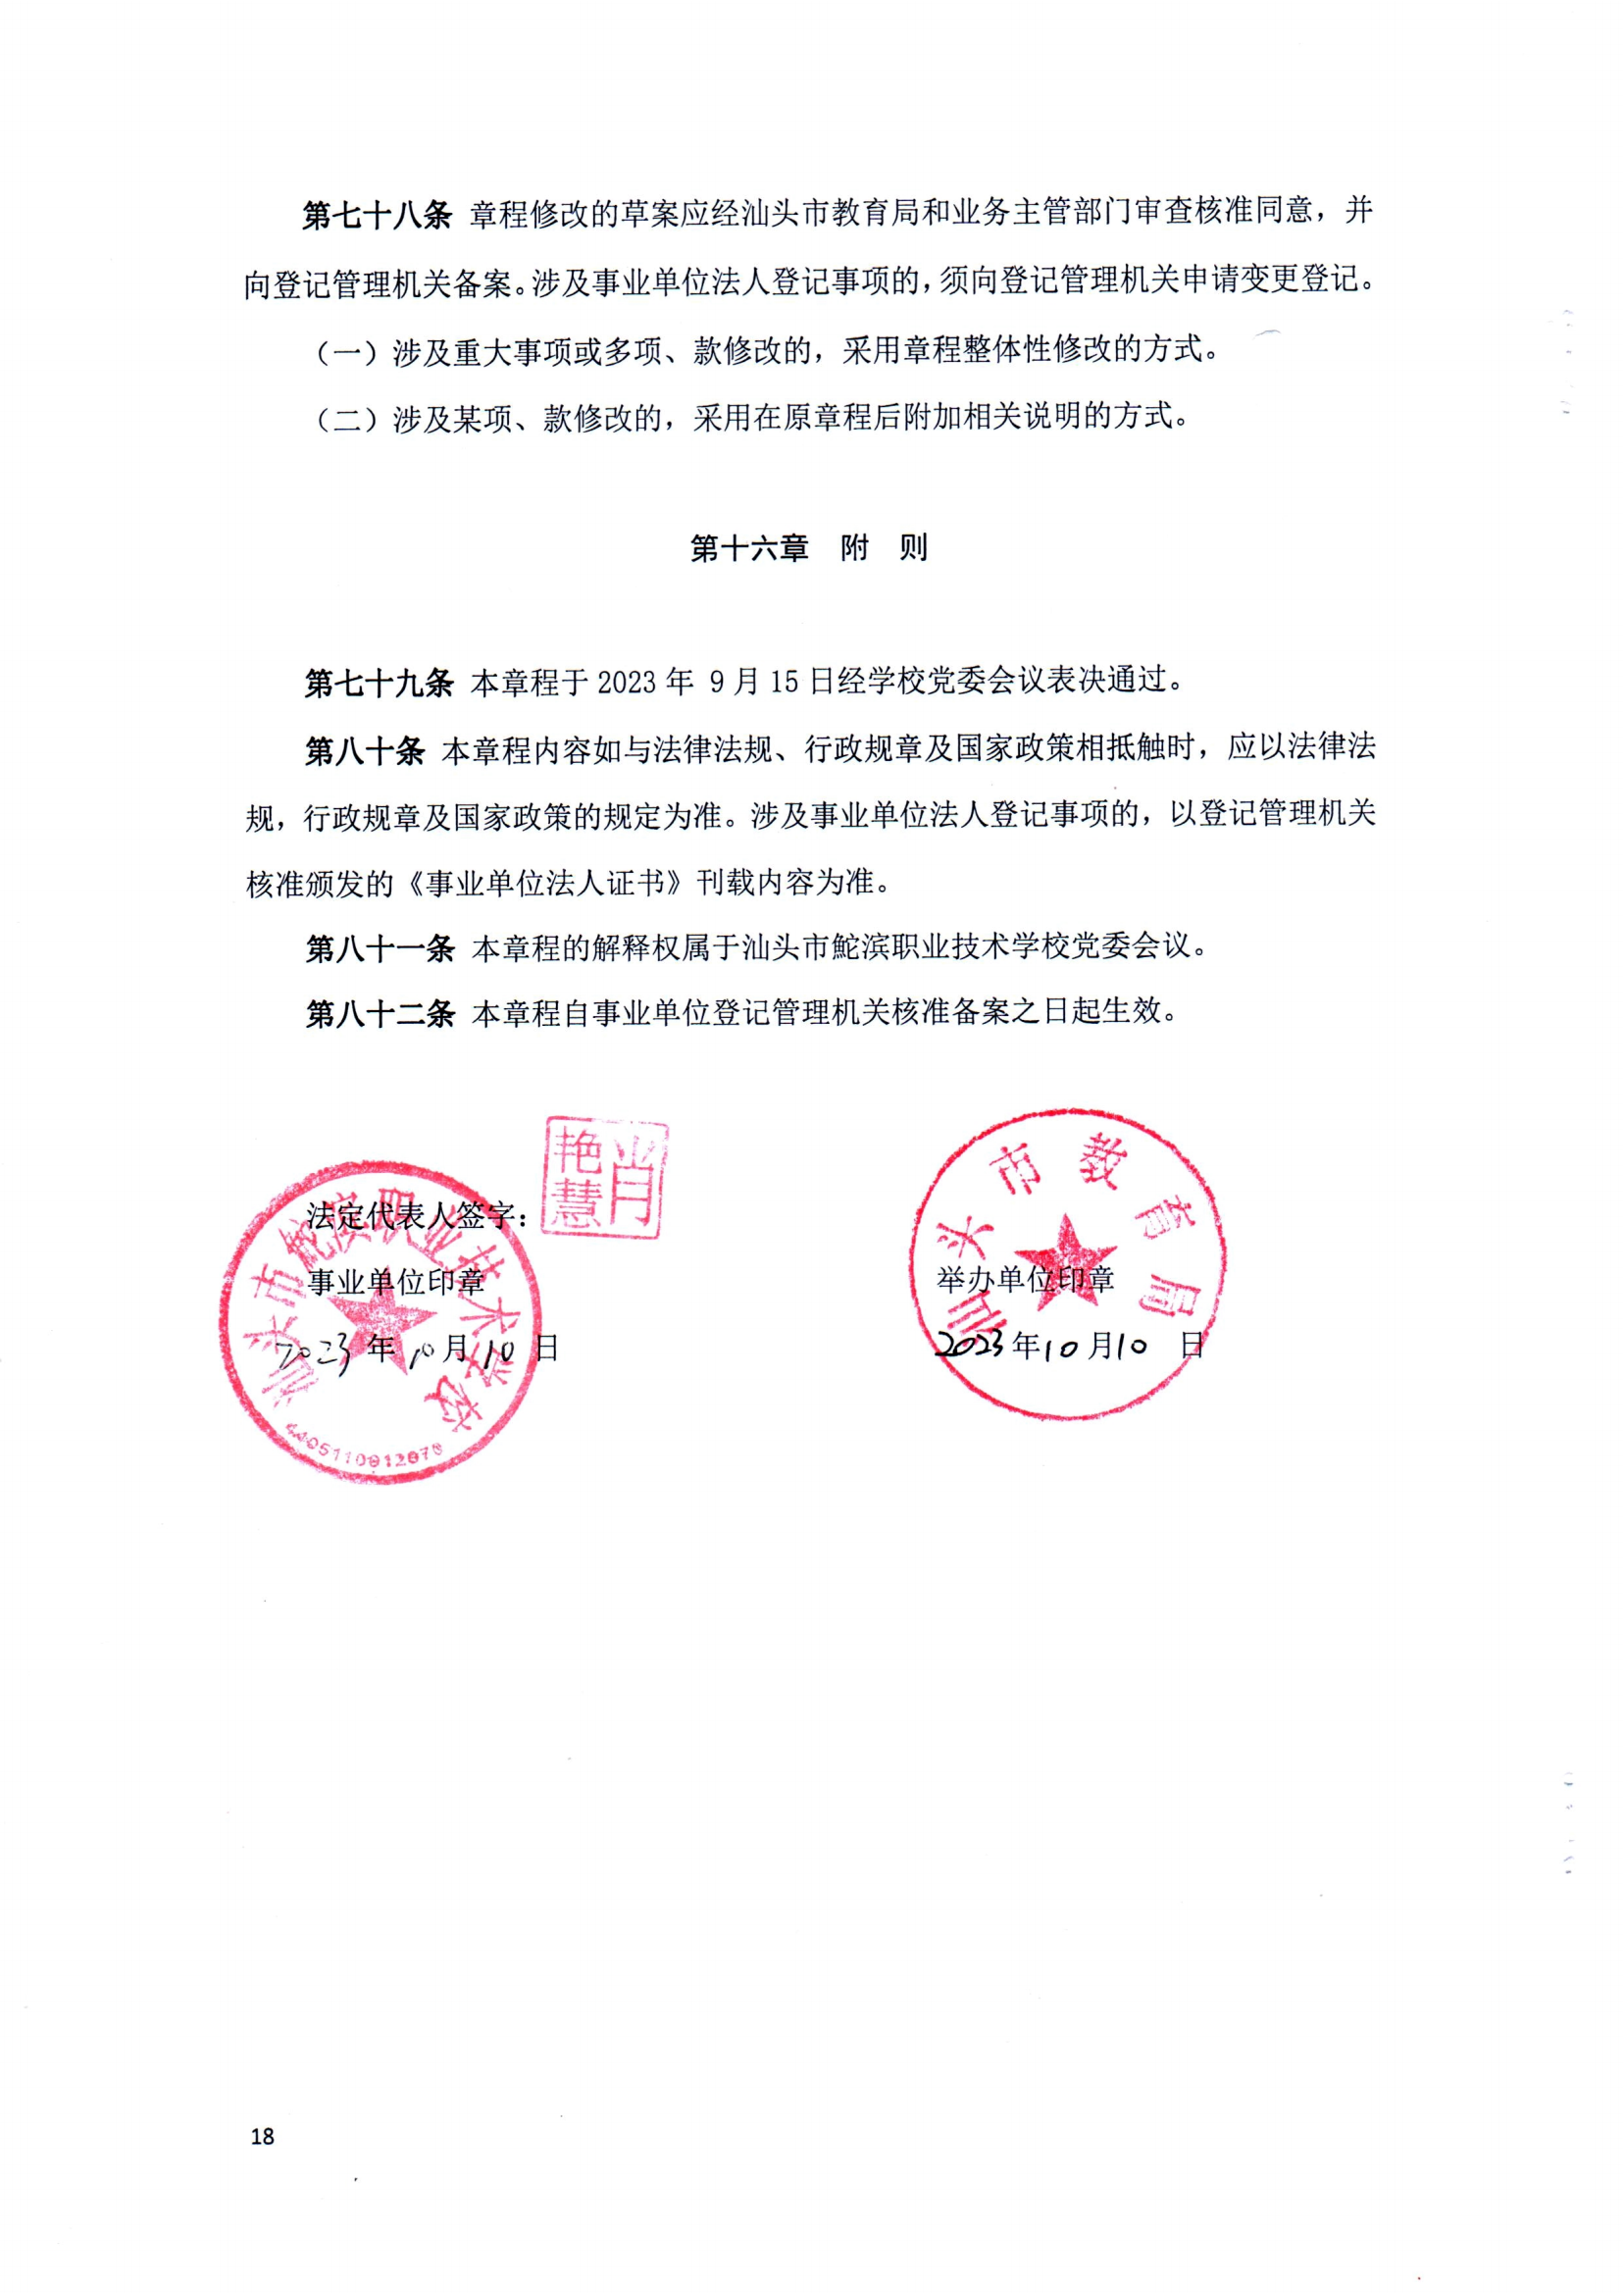 （中国）有限公司官网章程（修正案）_17.png